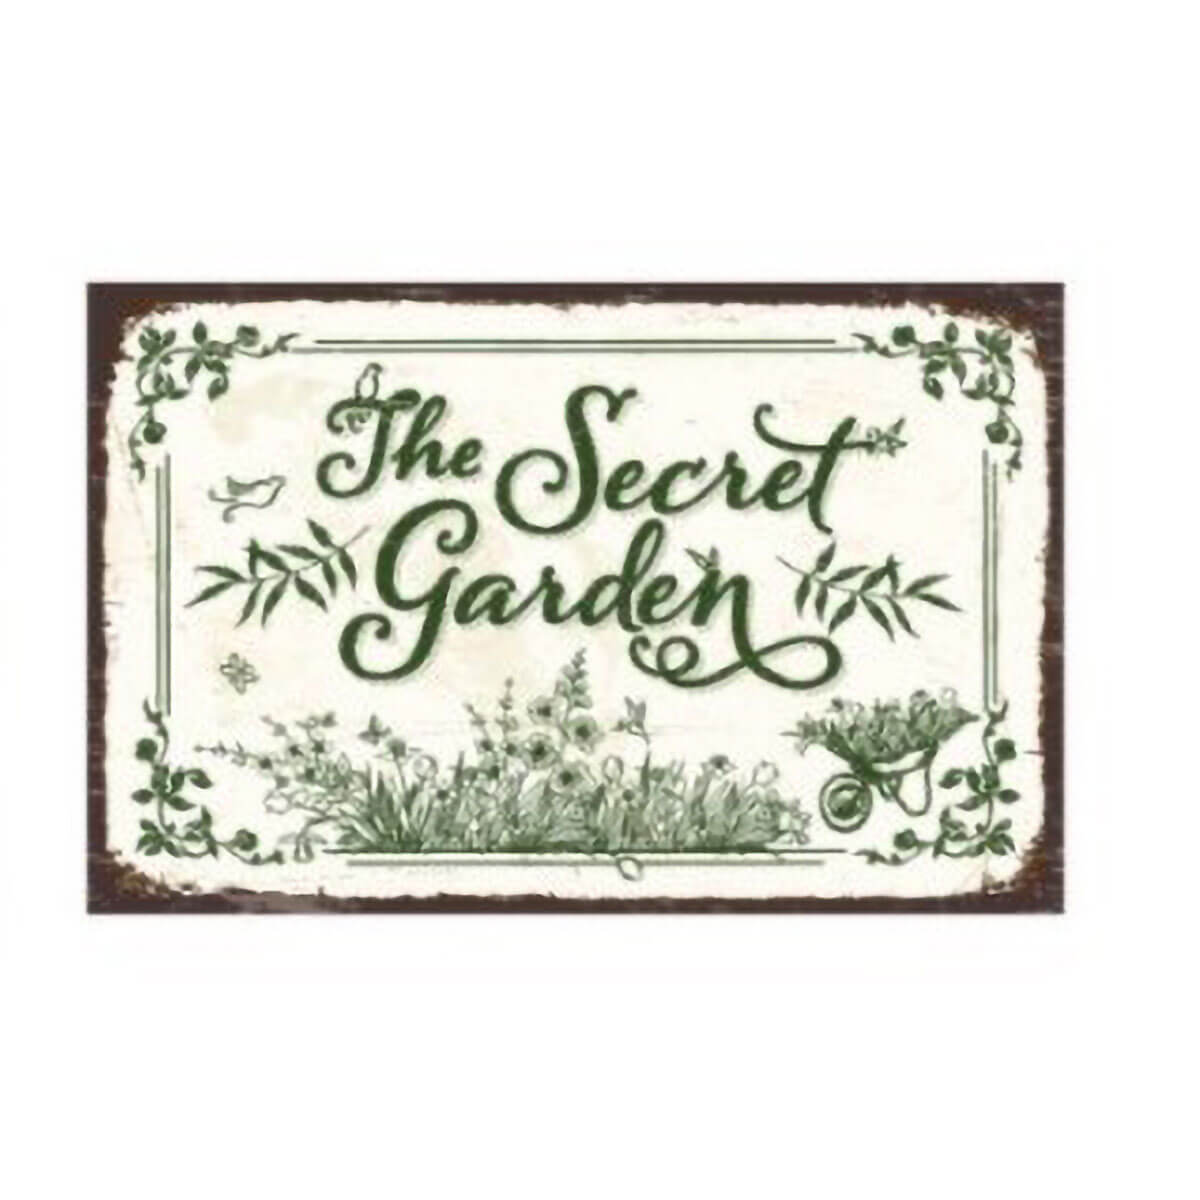 Vintage Embossed Metal Garden Sign - The Secret Garden - Alfresco Gardenware